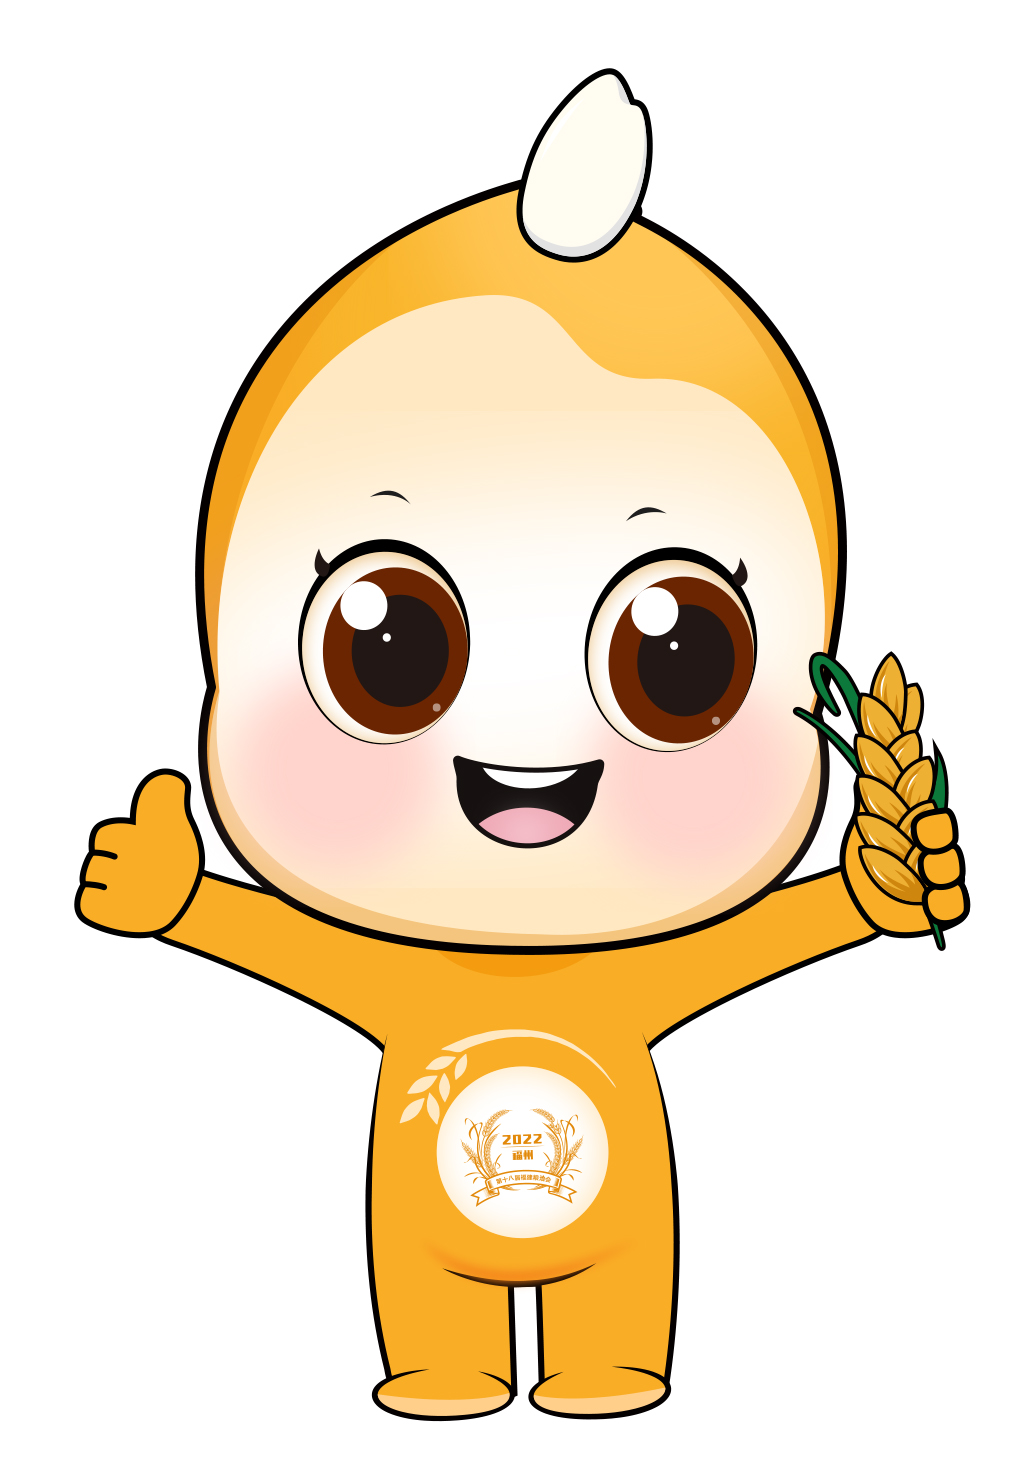 吉祥物发布！第十八届粮食产销协作福建洽谈会6月18日在福州开幕